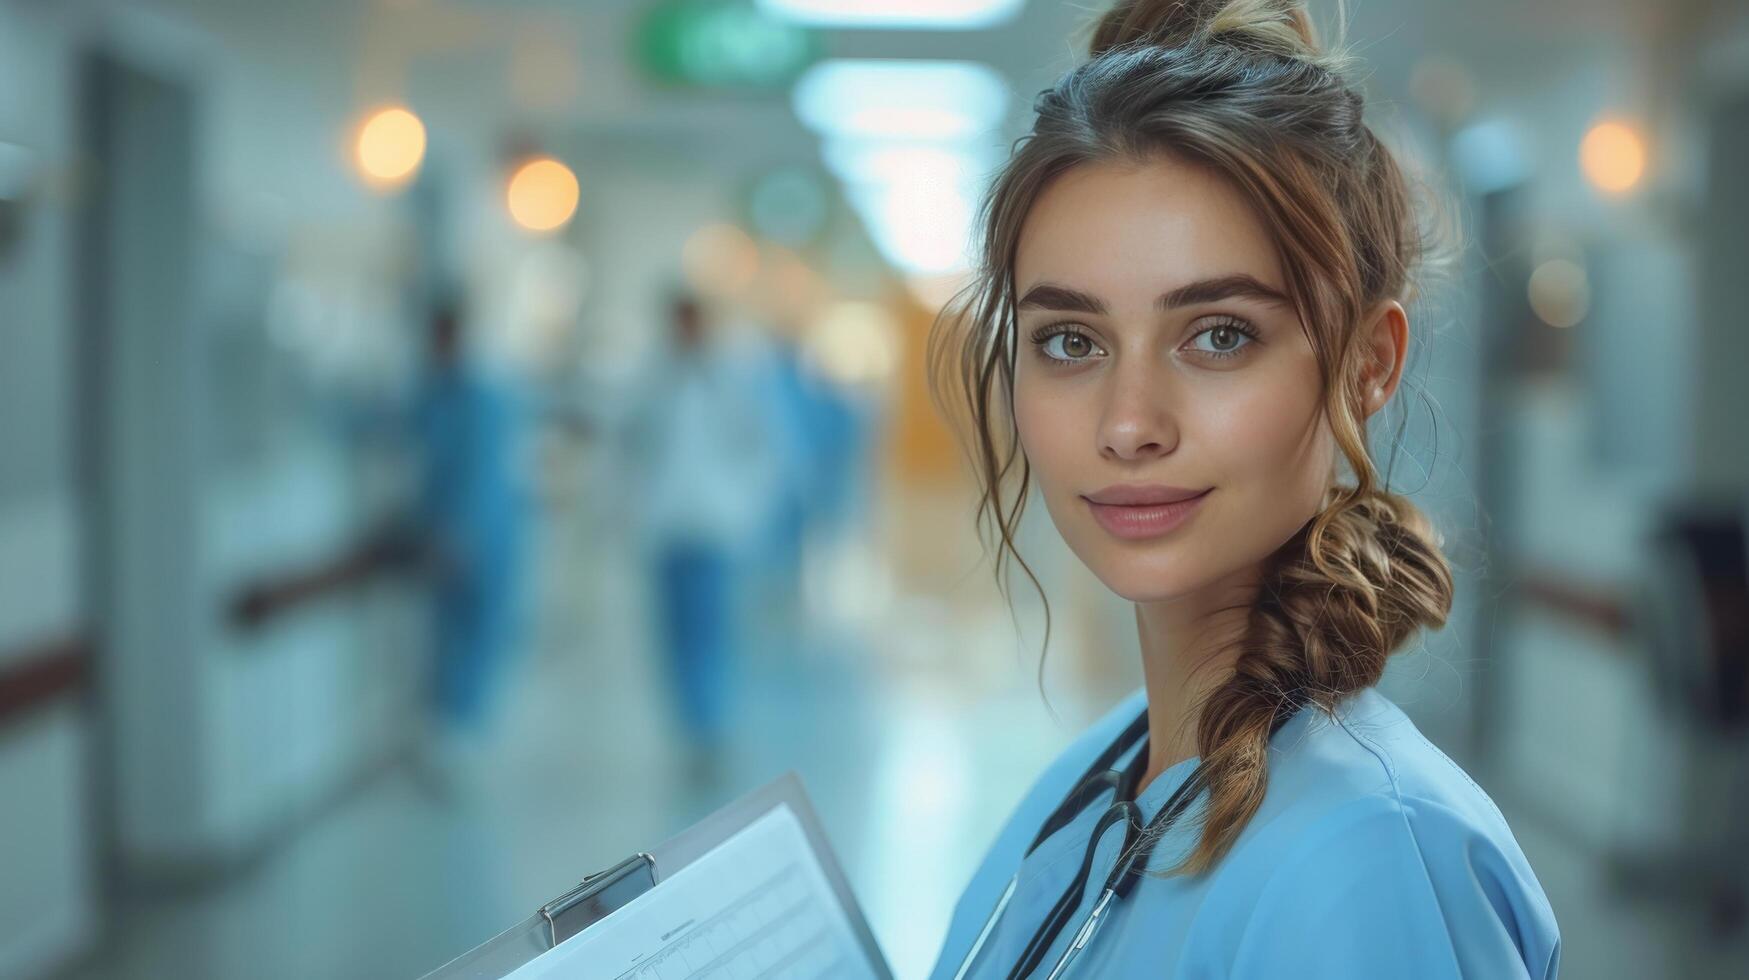 femelle infirmière dans gommages en portant presse-papiers dans hôpital couloir photo